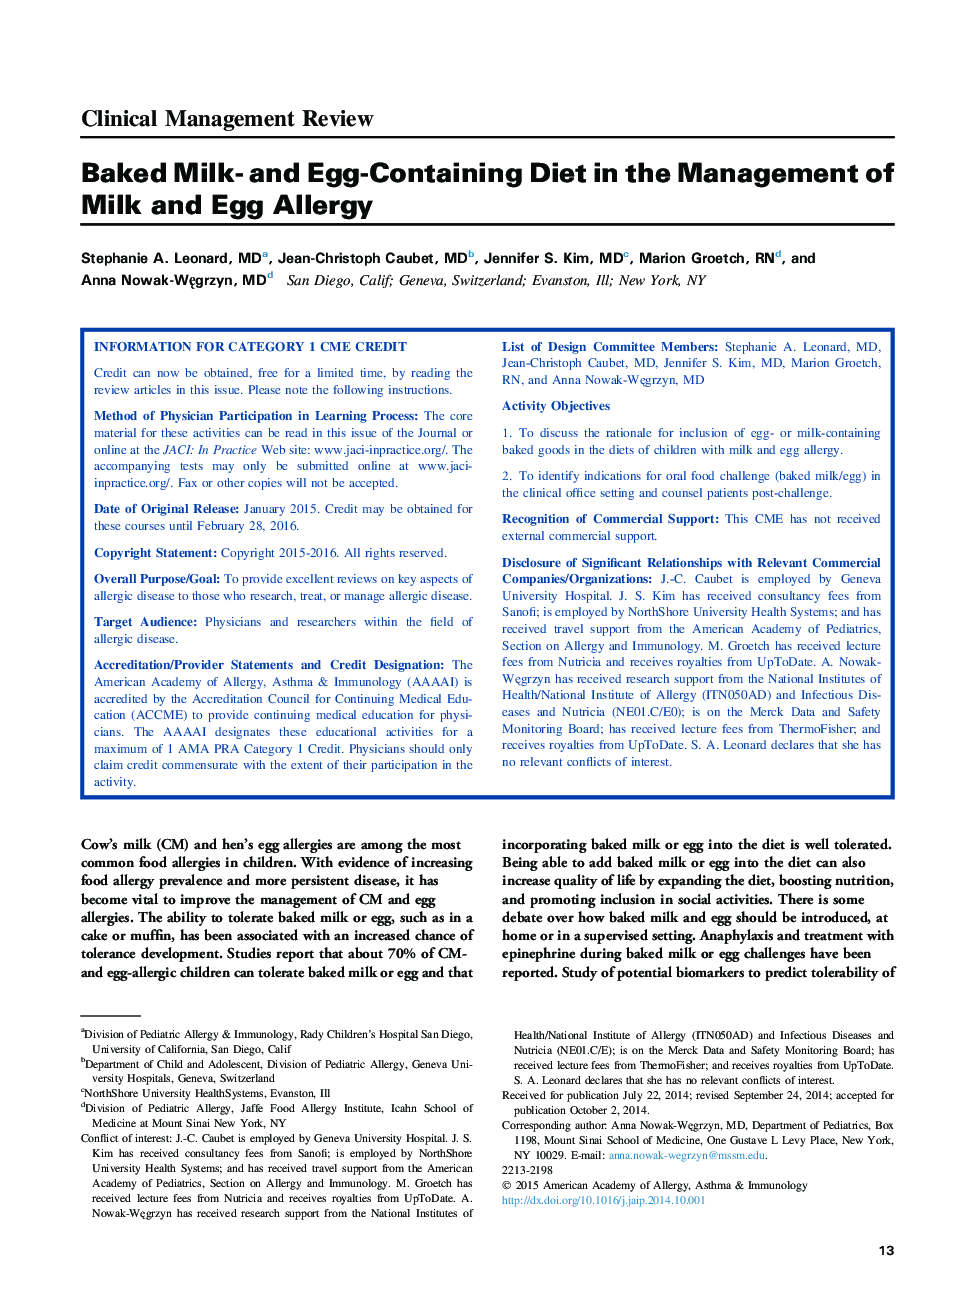 رژیم غذایی حاوی شیر و تخم مرغ در مدیریت آلرژی غذایی شیر و تخم مرغ 